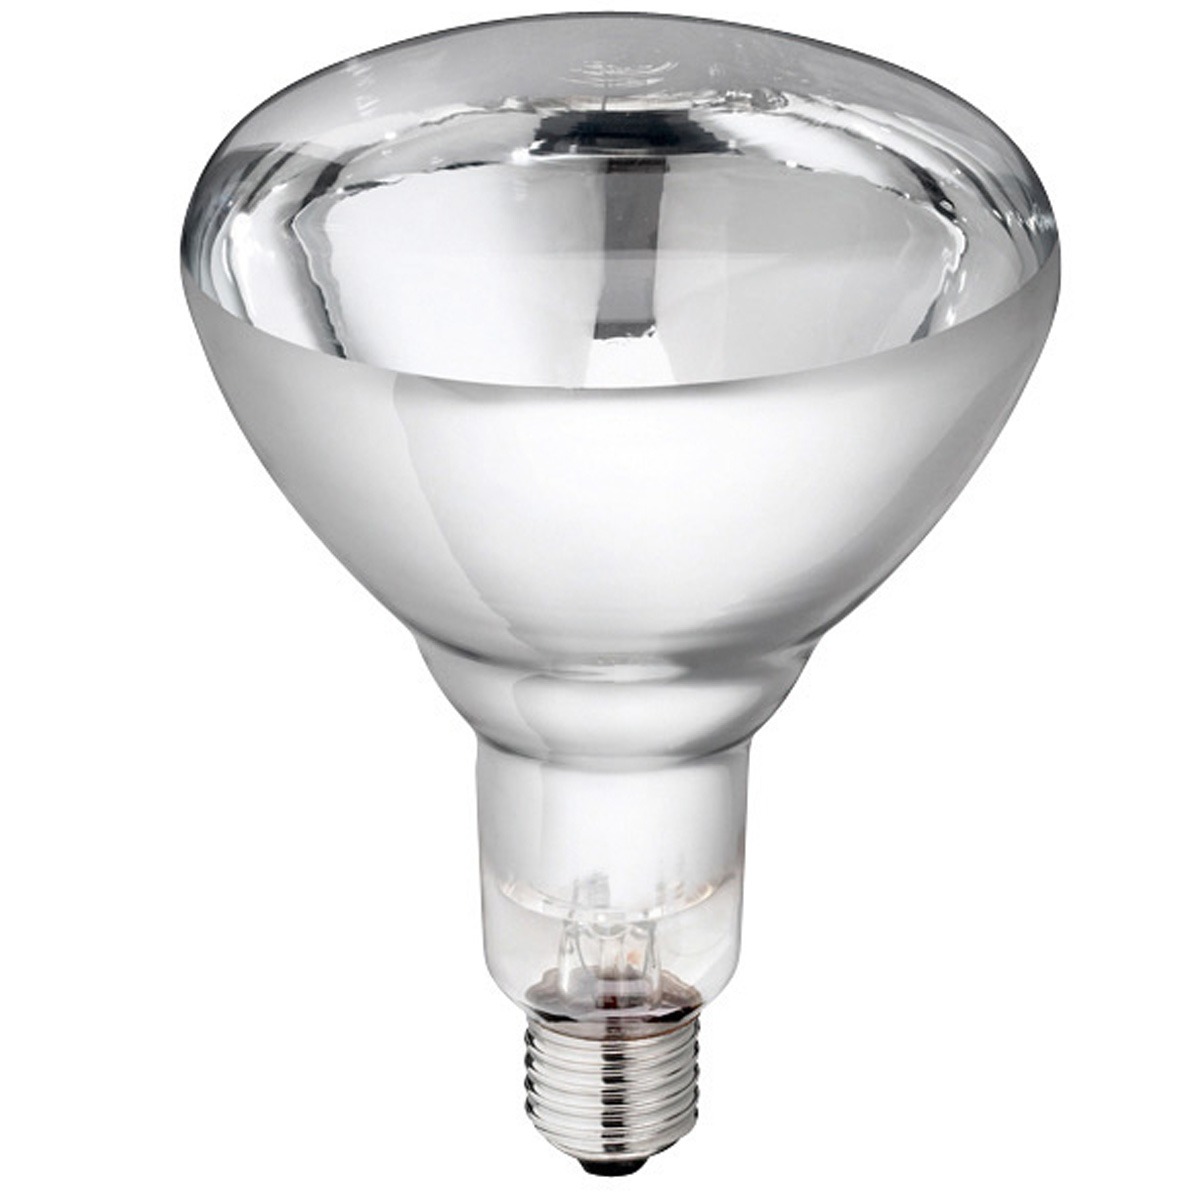 Philips lampa i härdat glas klart 250 W